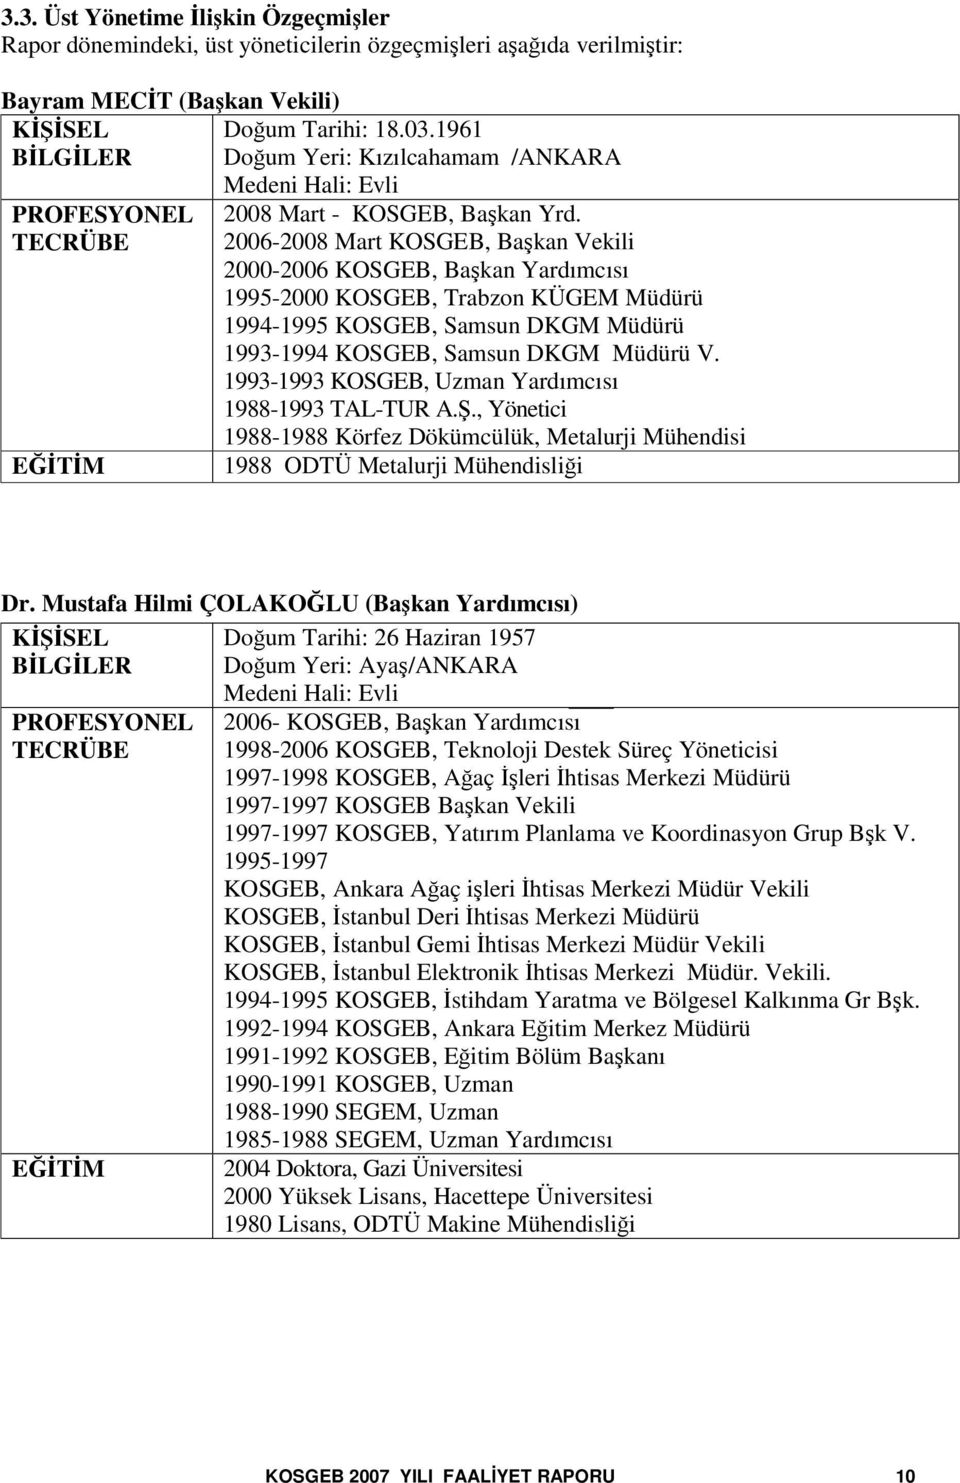 2006-2008 Mart KOSGEB, Bakan Vekili 2000-2006 KOSGEB, Bakan Yardımcısı 1995-2000 KOSGEB, Trabzon KÜGEM Müdürü 1994-1995 KOSGEB, Samsun DKGM Müdürü 1993-1994 KOSGEB, Samsun DKGM Müdürü V.